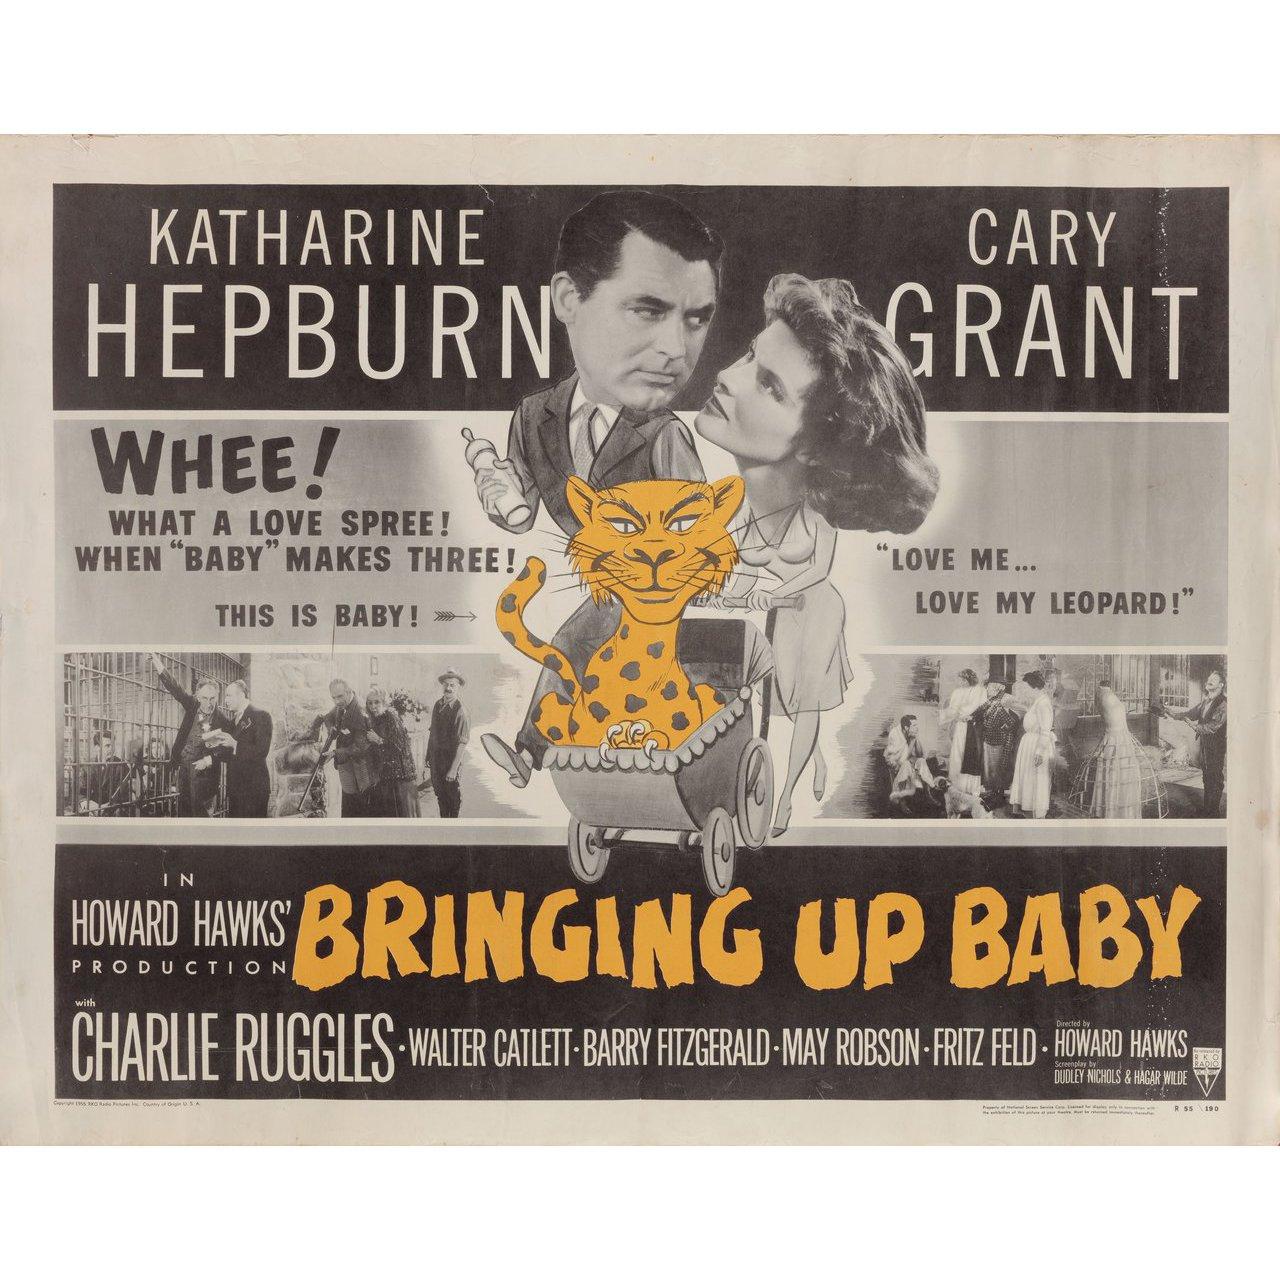 Originalplakat von 1955 für den Film Bringing Up Baby von 1938 unter der Regie von Howard Hawks mit Katharine Hepburn / Cary Grant / Charles Ruggles / Walter Catlett. Sehr guter Zustand, gerollt mit leichten Knicken. Bitte beachten Sie: Die Größe